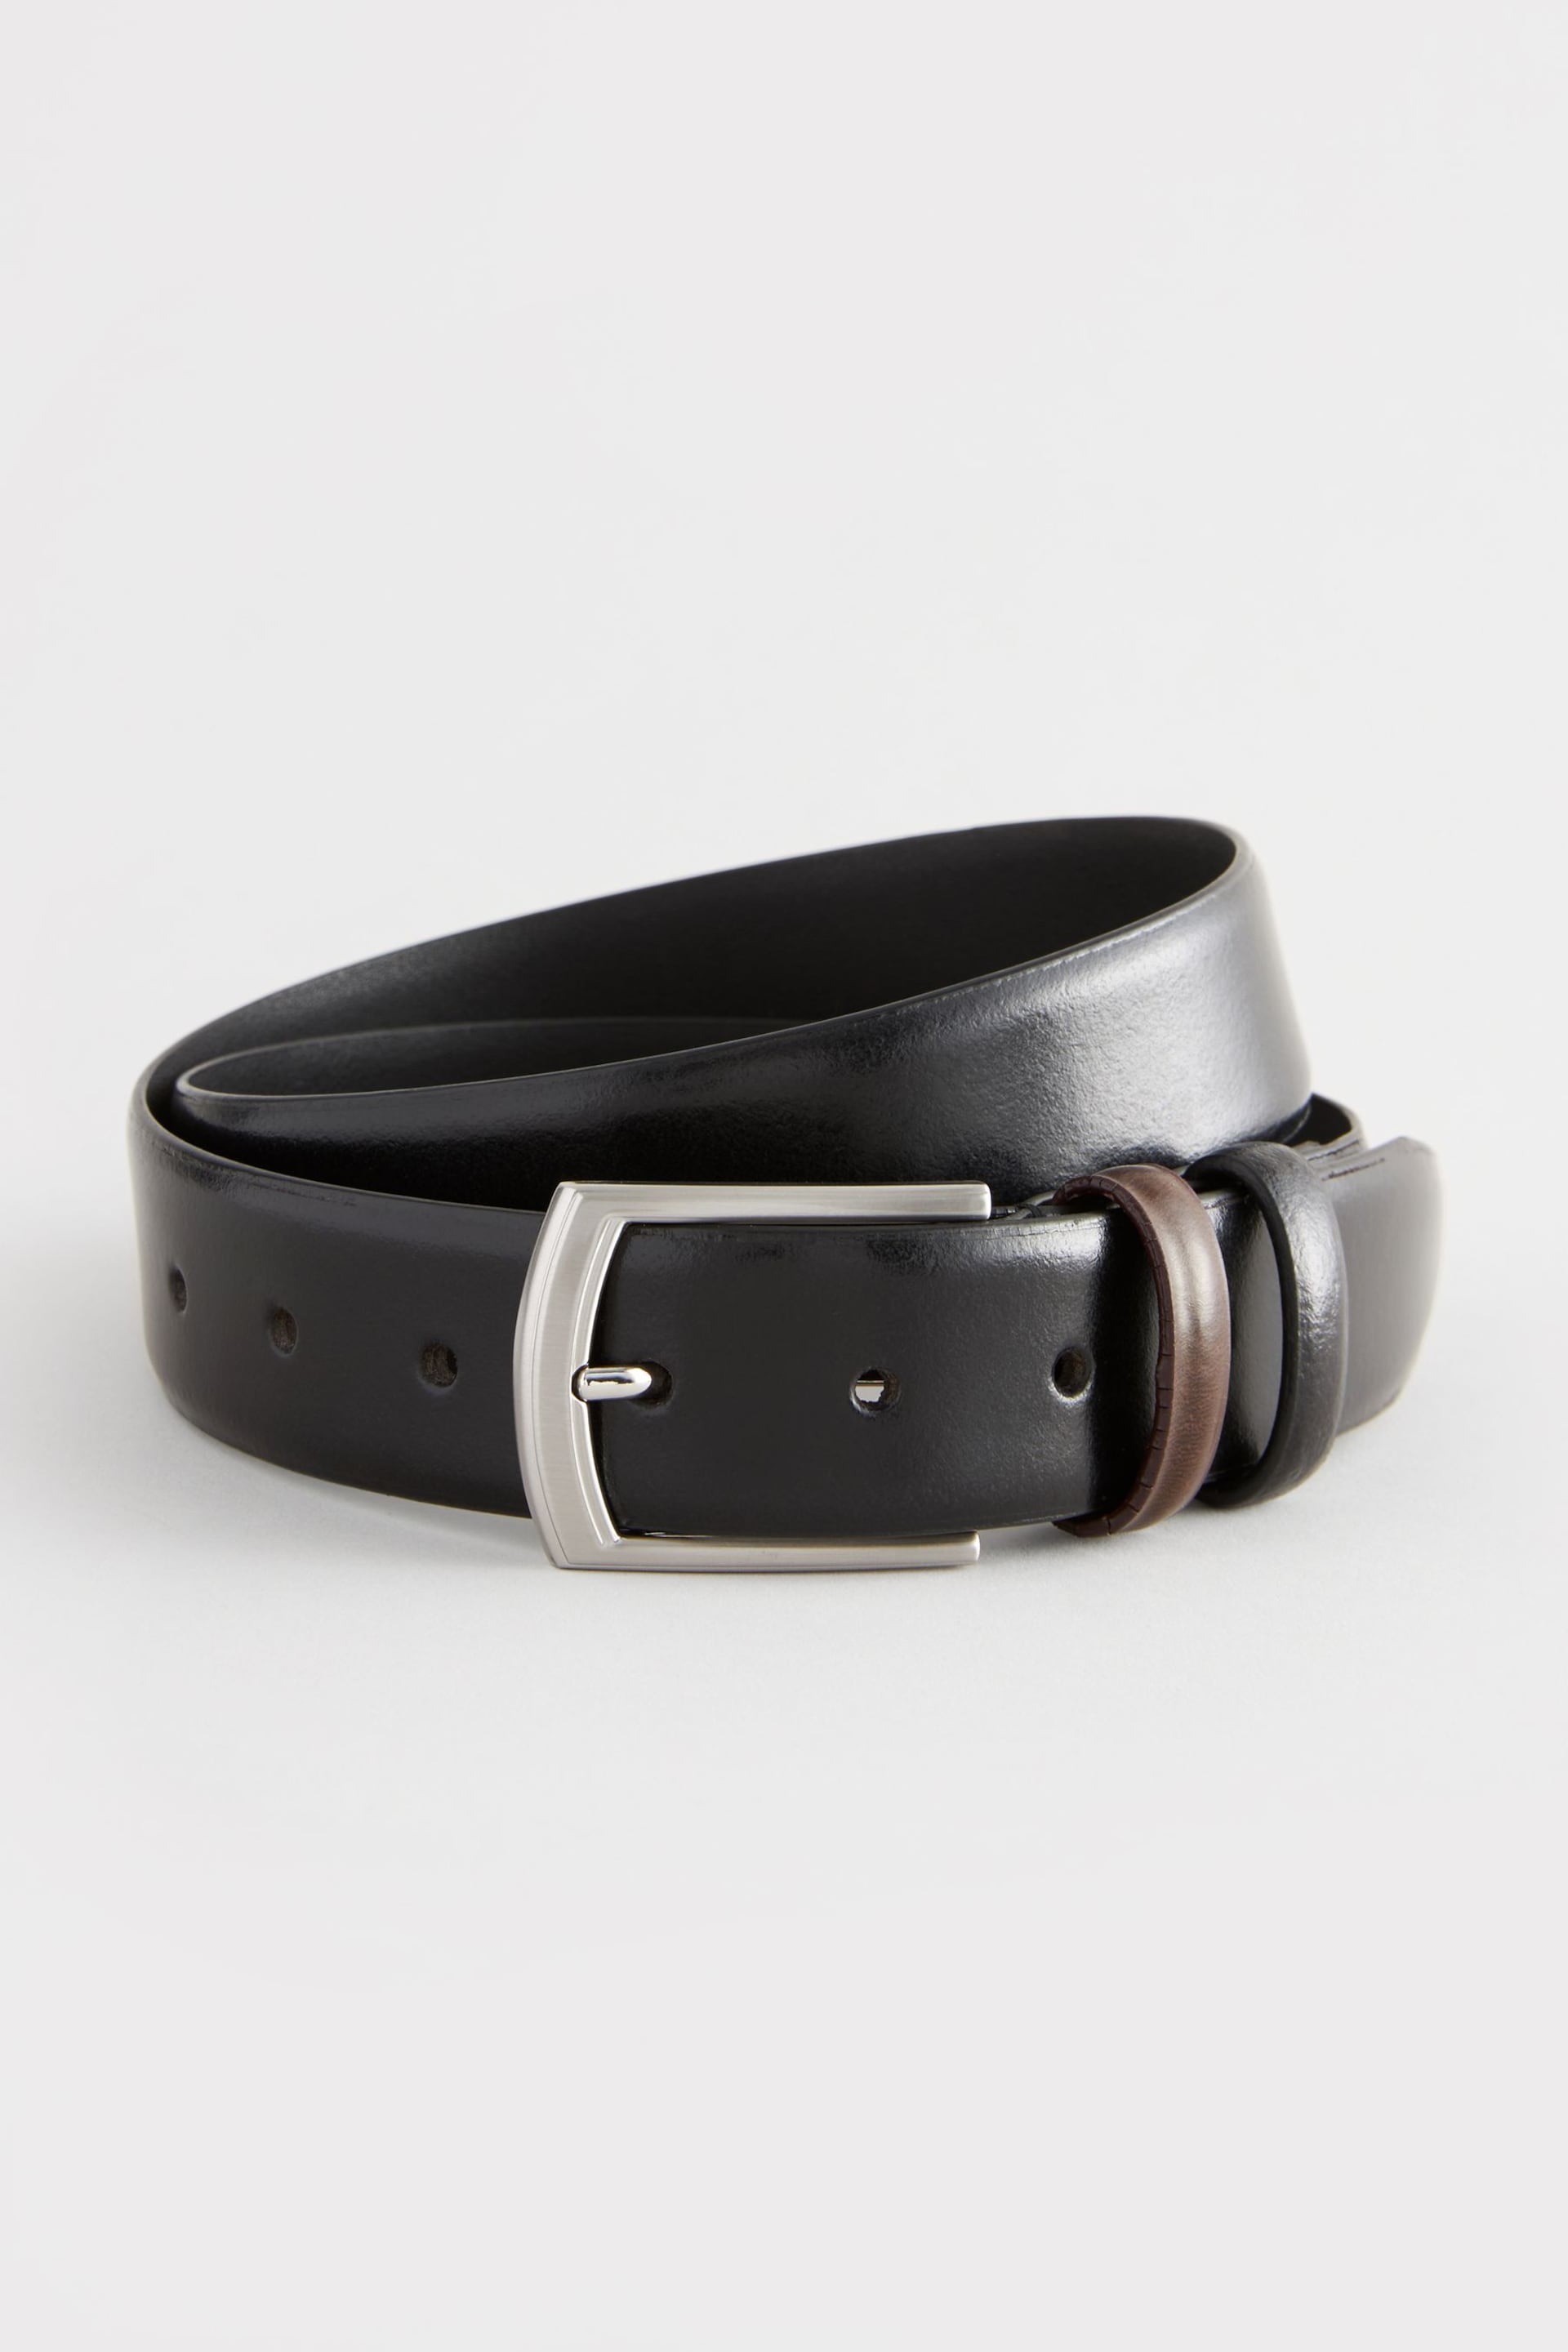 Black Formal Leather Belt - Image 2 of 3